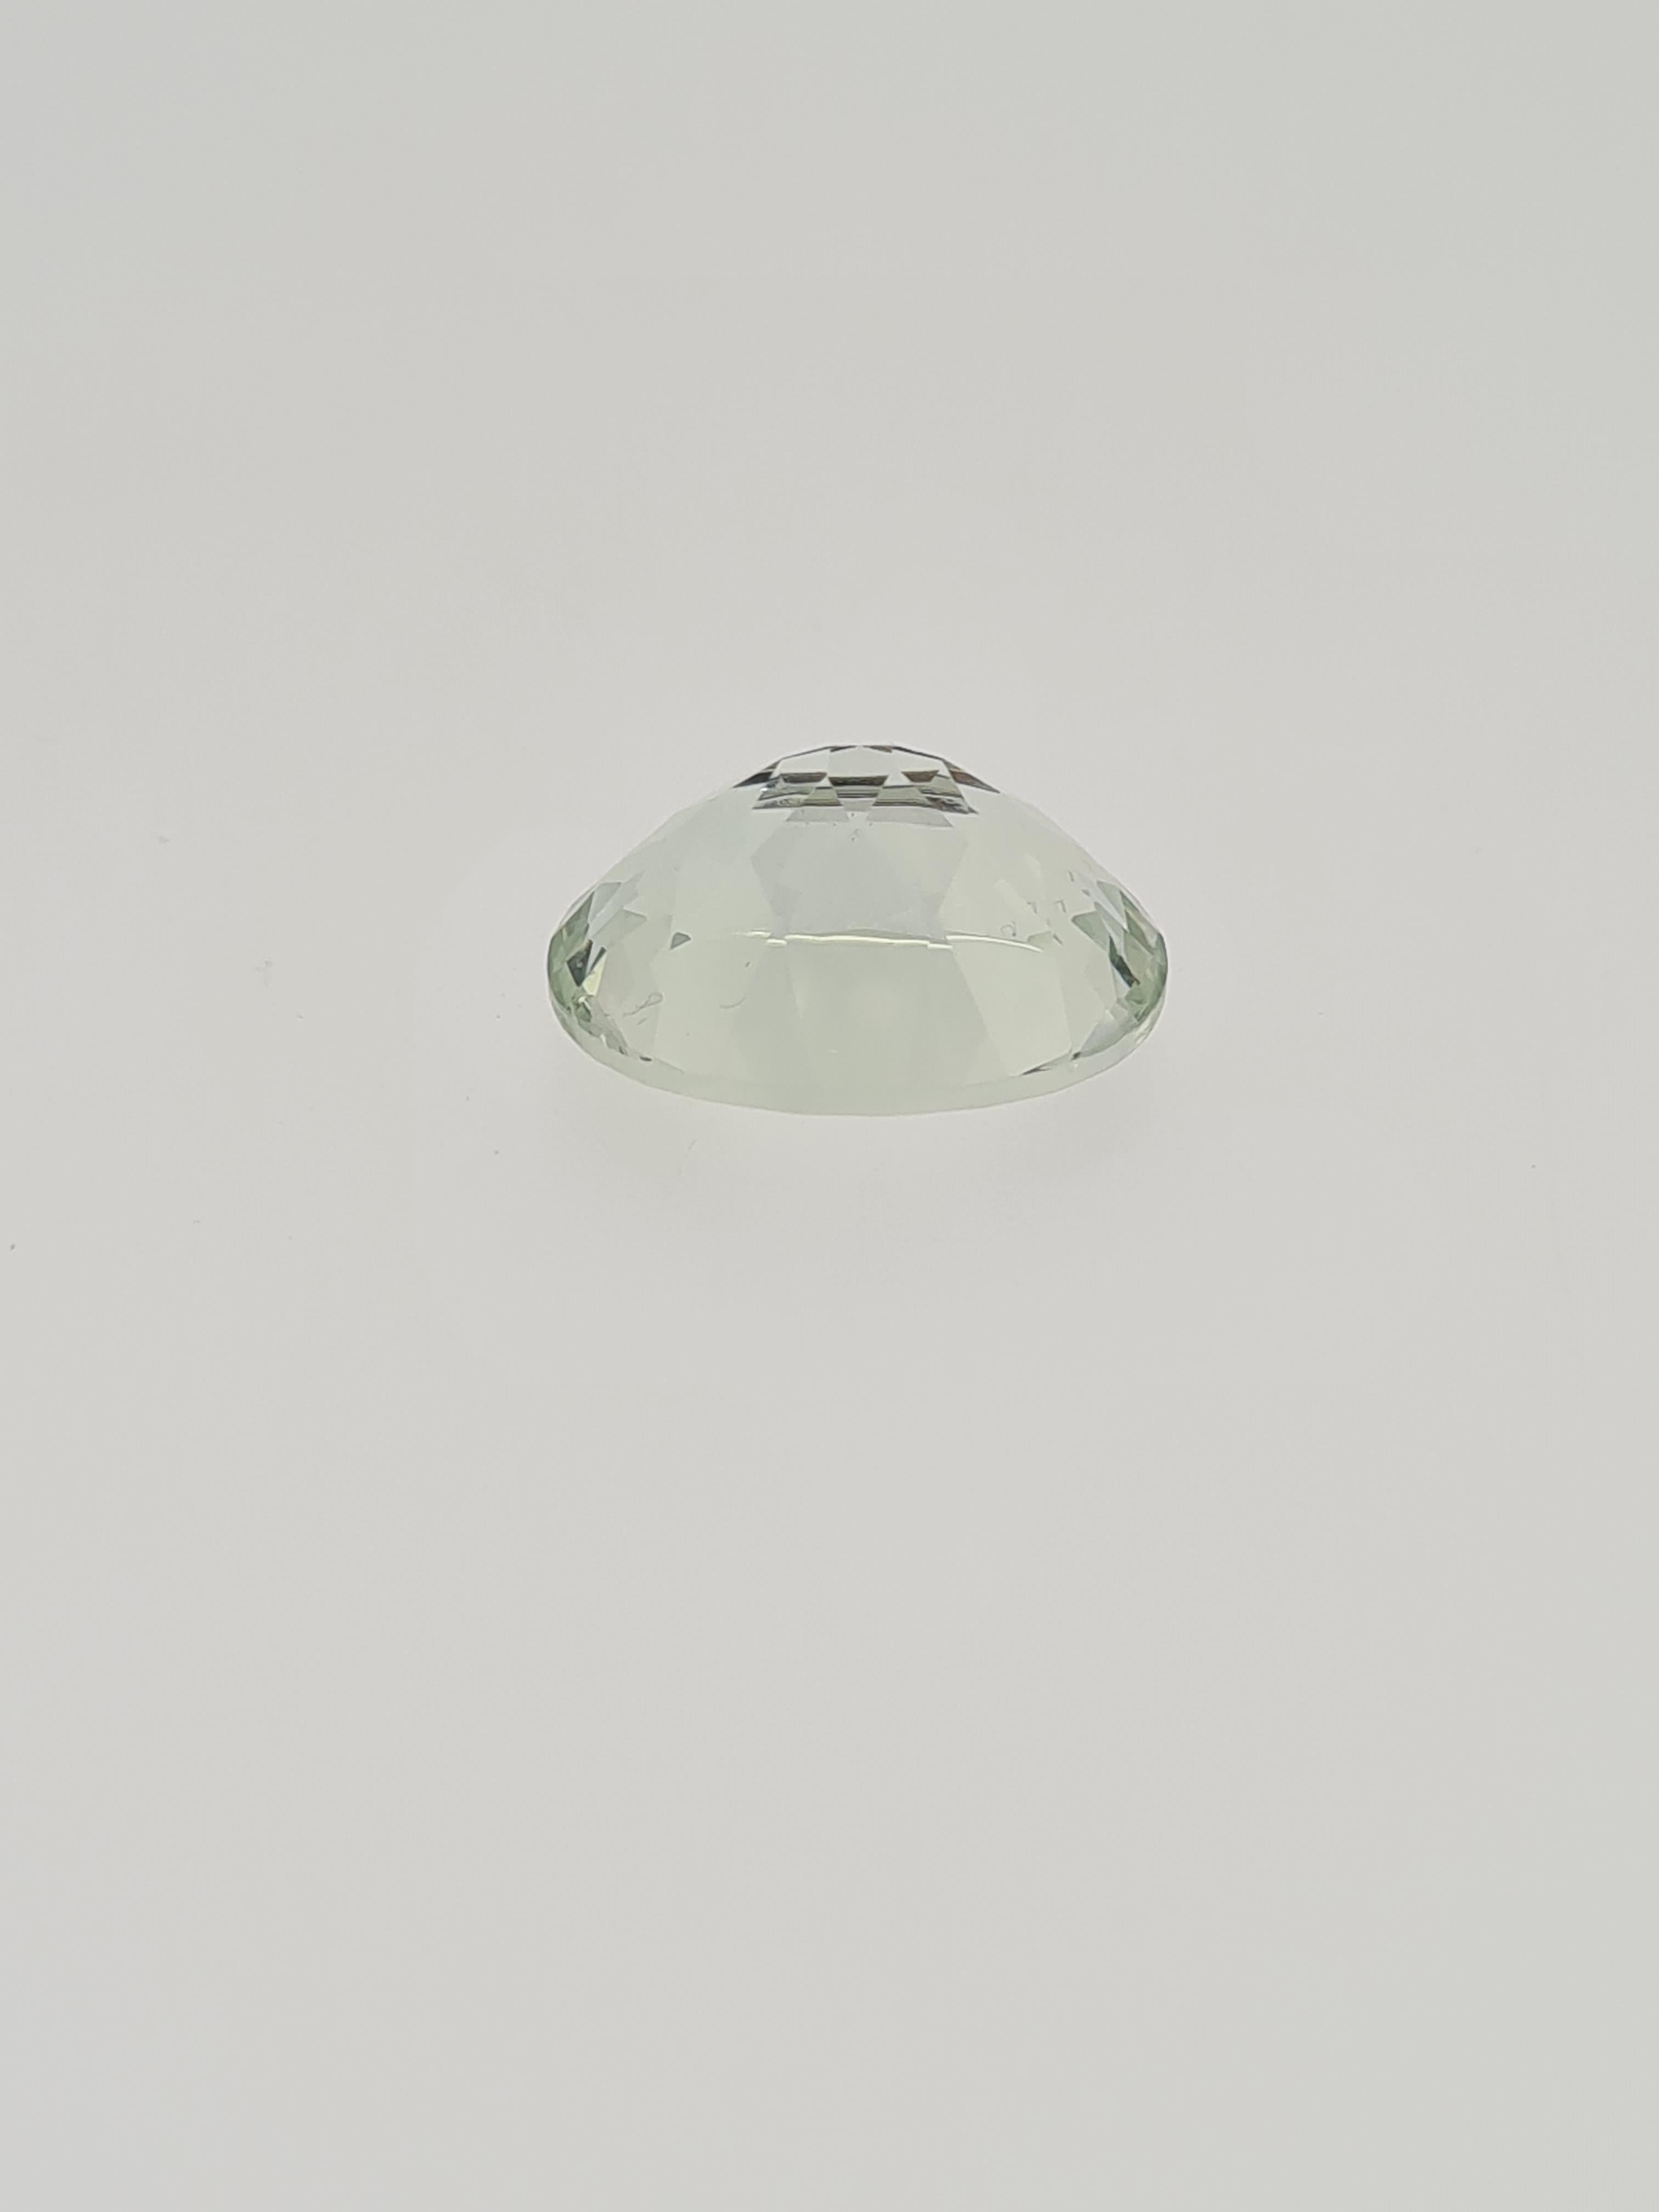 Green amethyst oval cut gem stone - Image 2 of 5